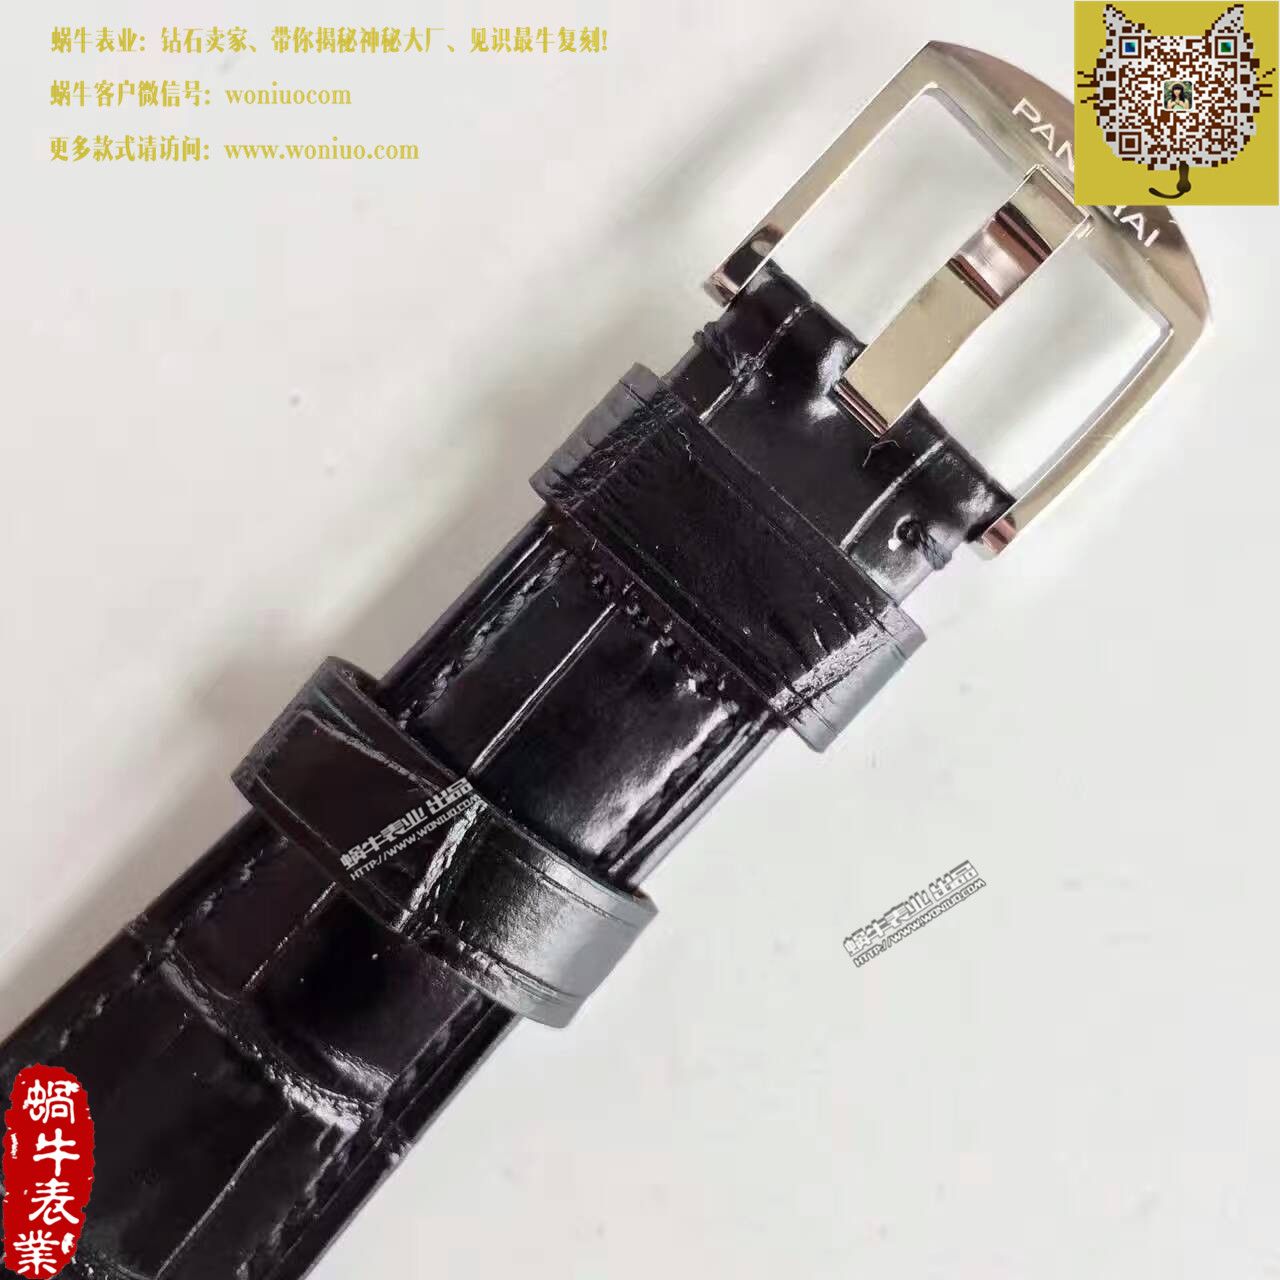 【XF厂一比一精仿手表】沛纳海LUMINOR DUE系列PAM00676腕表 